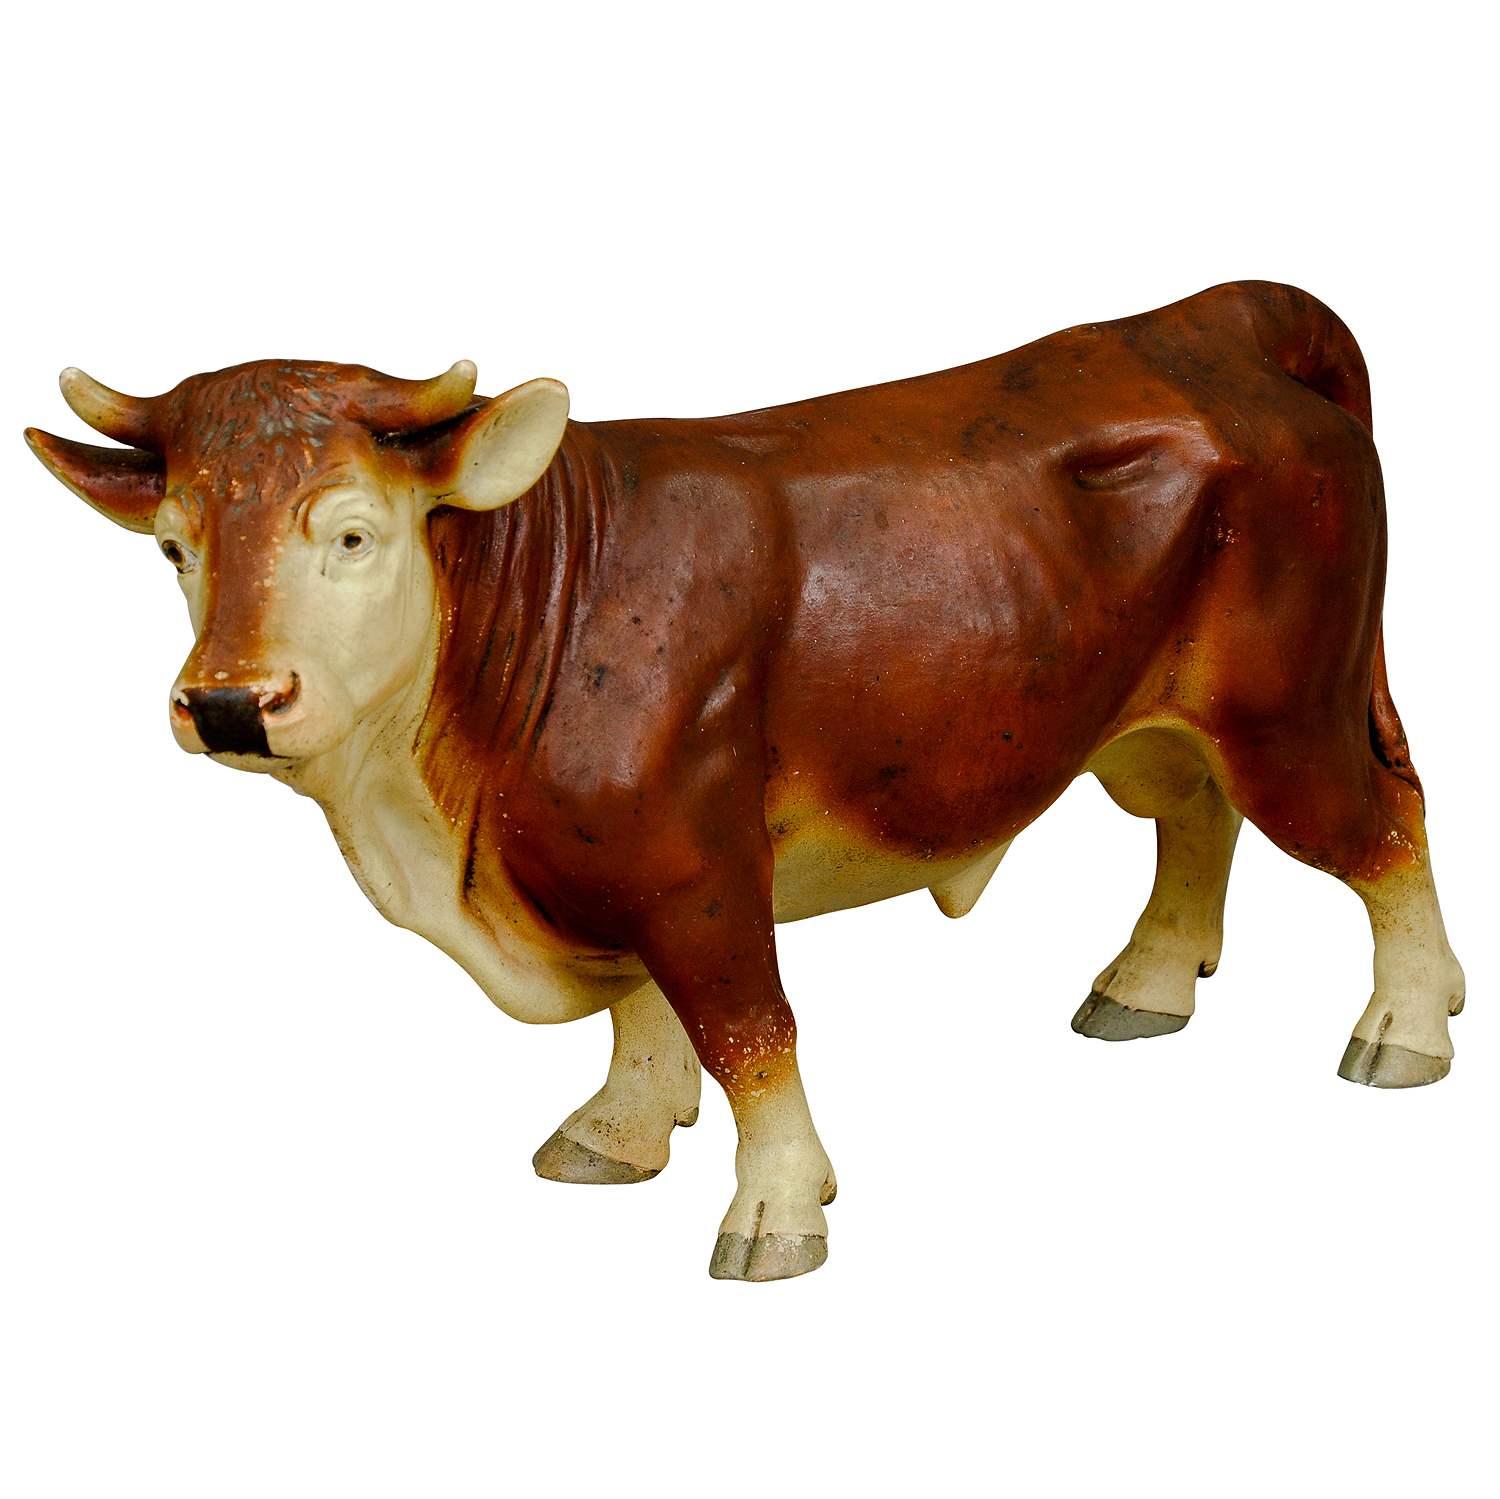 Décor de boucherie antique d'un bœuf en poterie

Grande statue de bœuf en poterie peinte. Il a été utilisé comme décoration de vitrine dans une boucherie allemande. La statue a été fabriquée dans les années 1940.

Artfour est une société commerciale